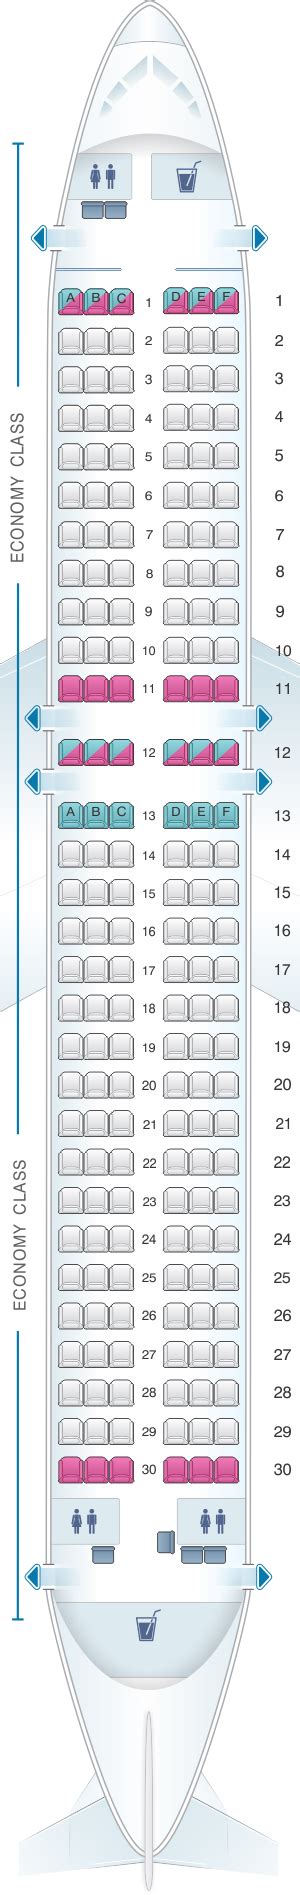 Airbus A320 Easyjet Seat Plan